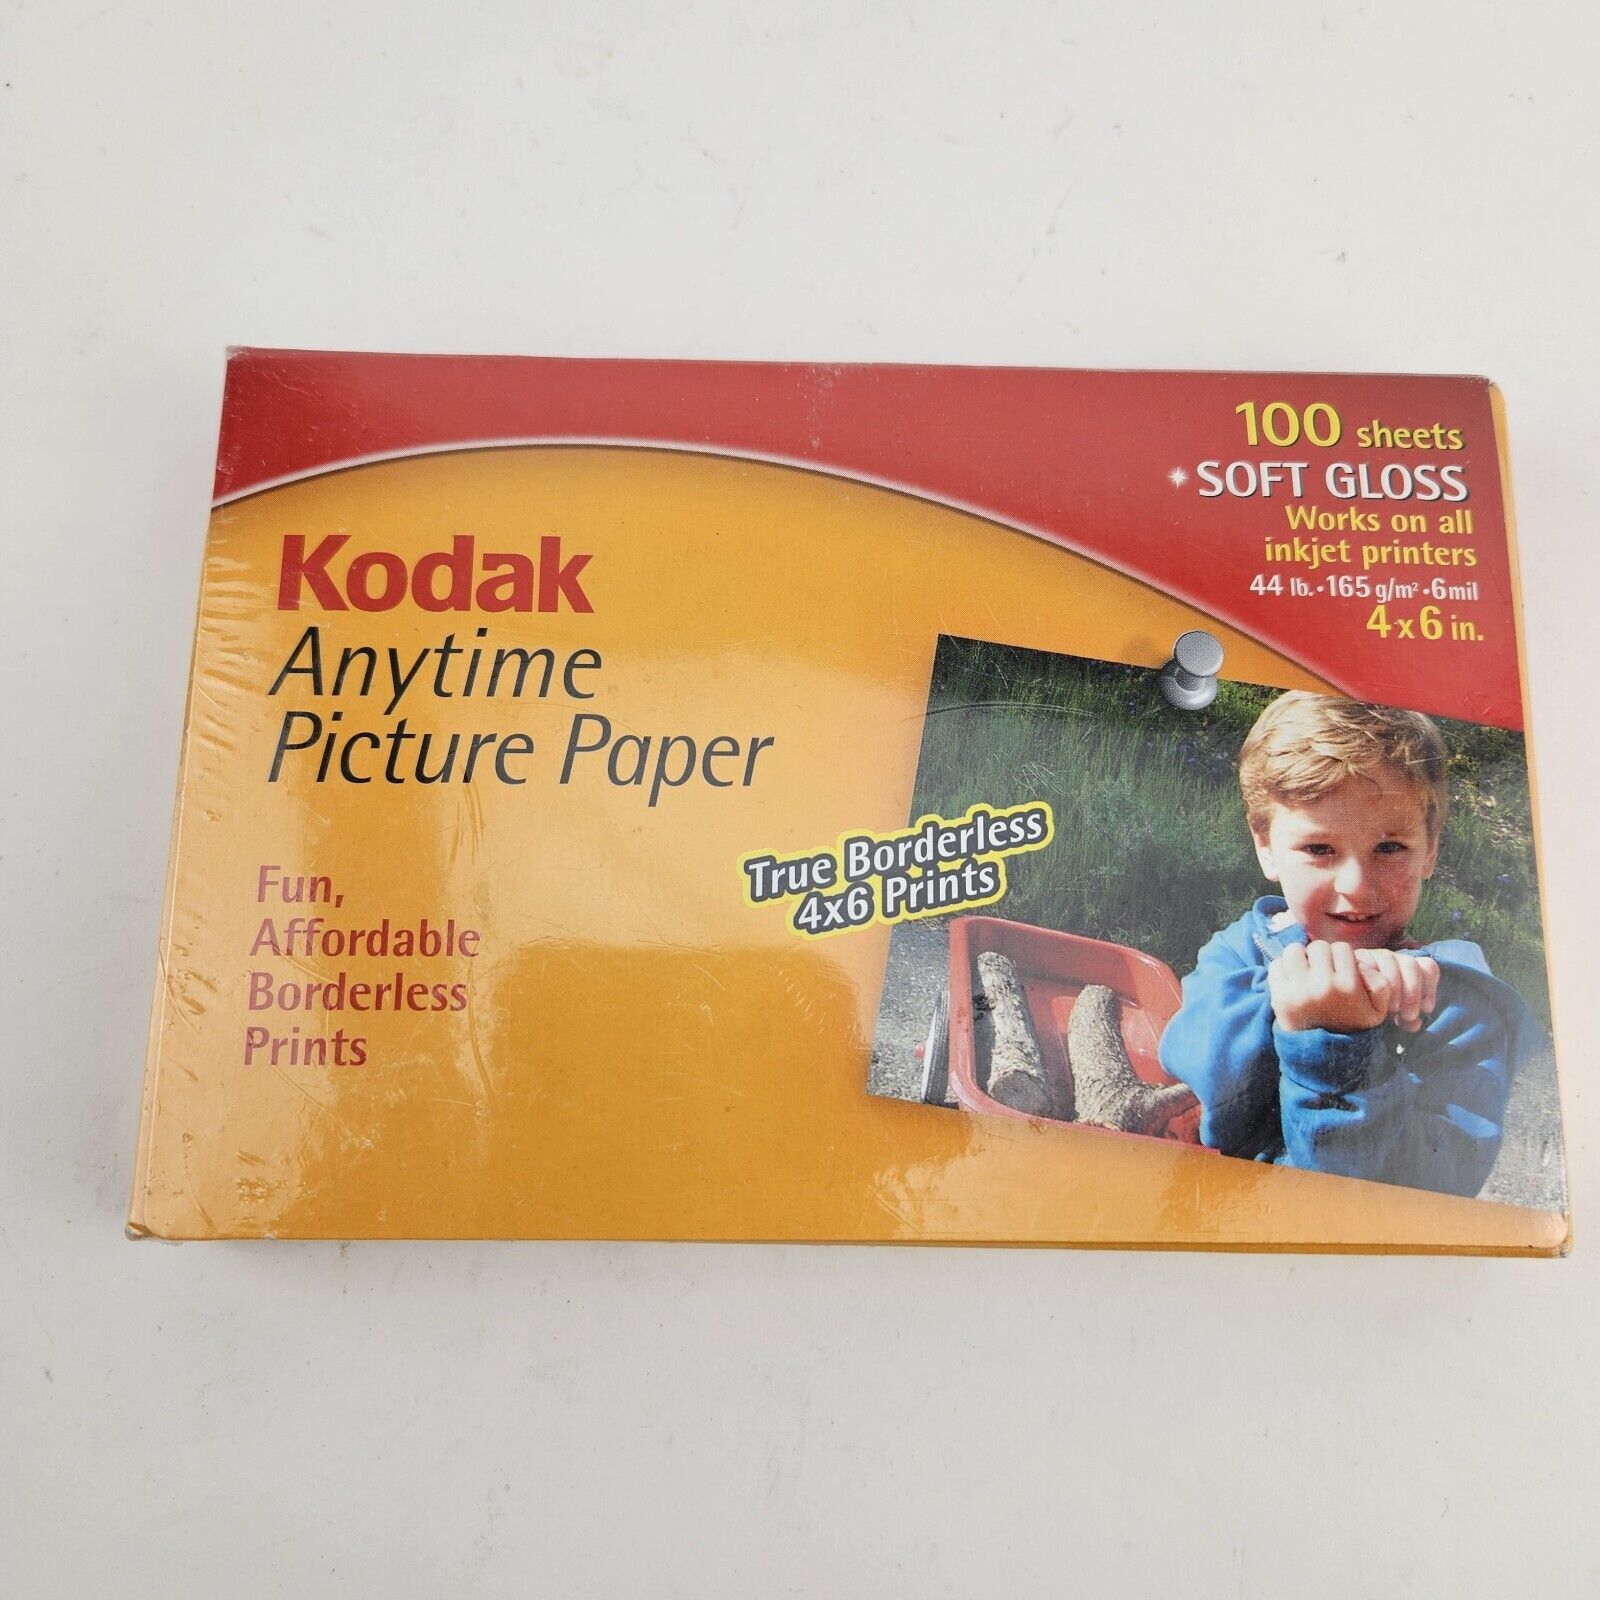 Kodak Anytime Picture Paper for Inkjet Prints 100 Sheets 4x6” Brand New VTG 2000